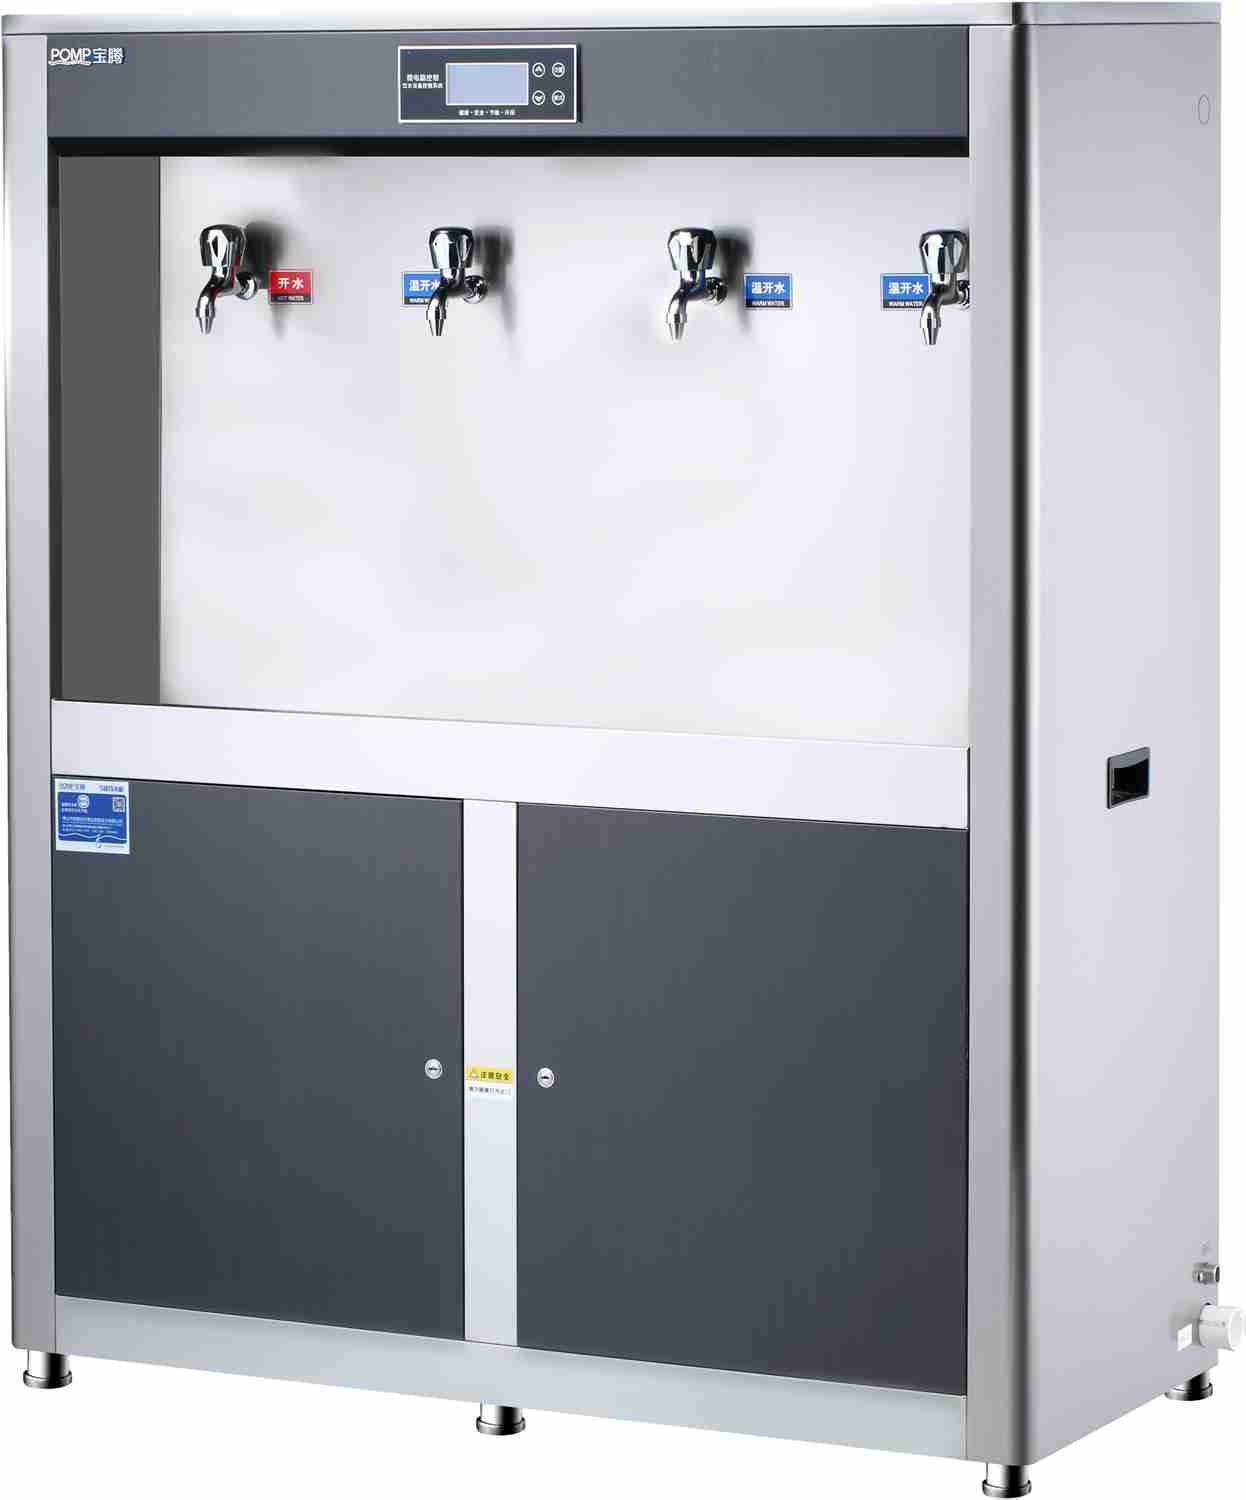 厂家直销 节能温热饮水机BT-4G+不锈钢饮水机